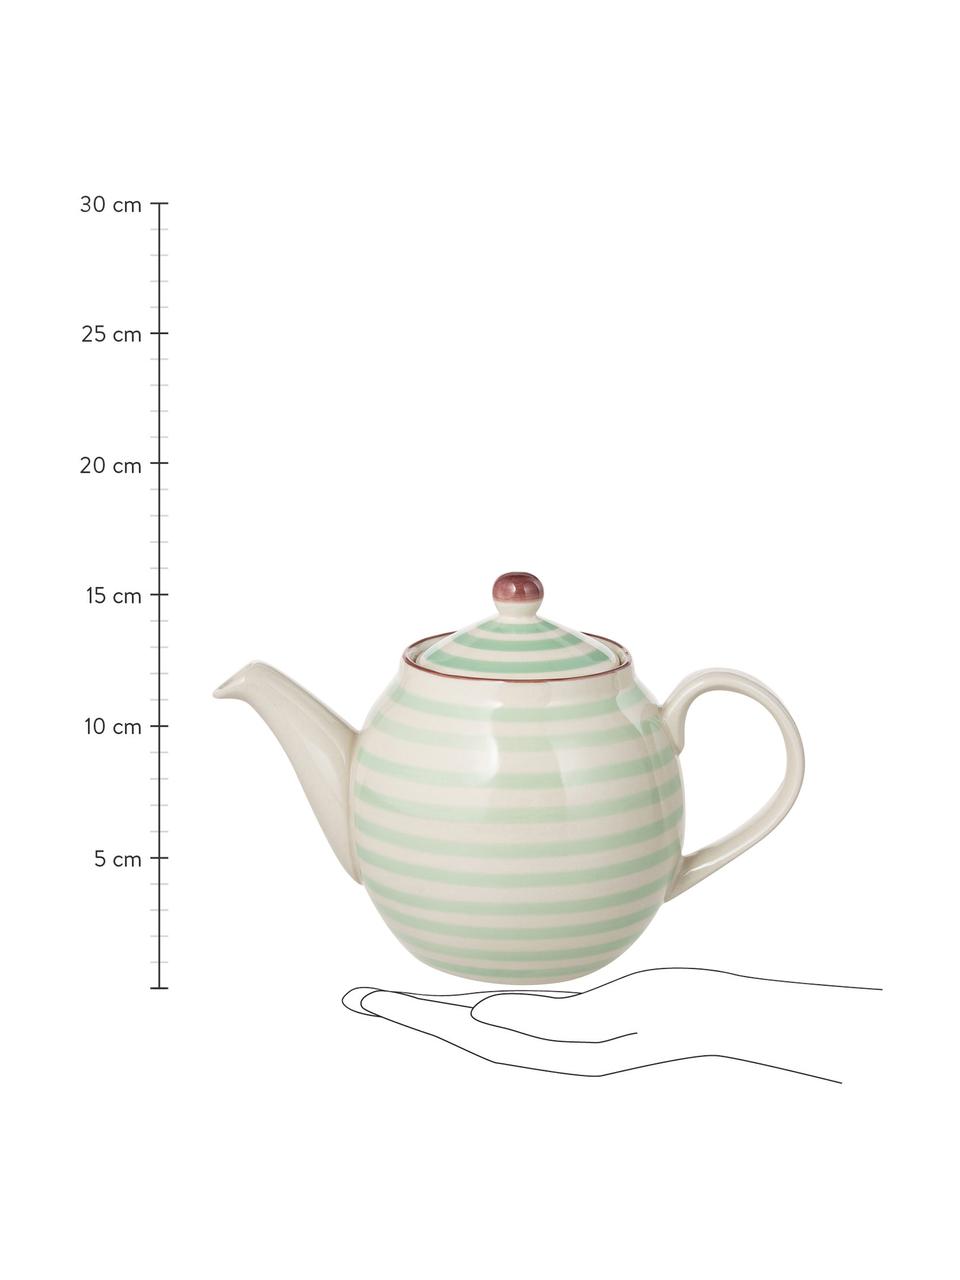 Handbemalte Teekanne Patrizia mit verspieltem Muster, 1.2 L, Steingut, Grün, Gebrochenes Weiss, 1.2 L